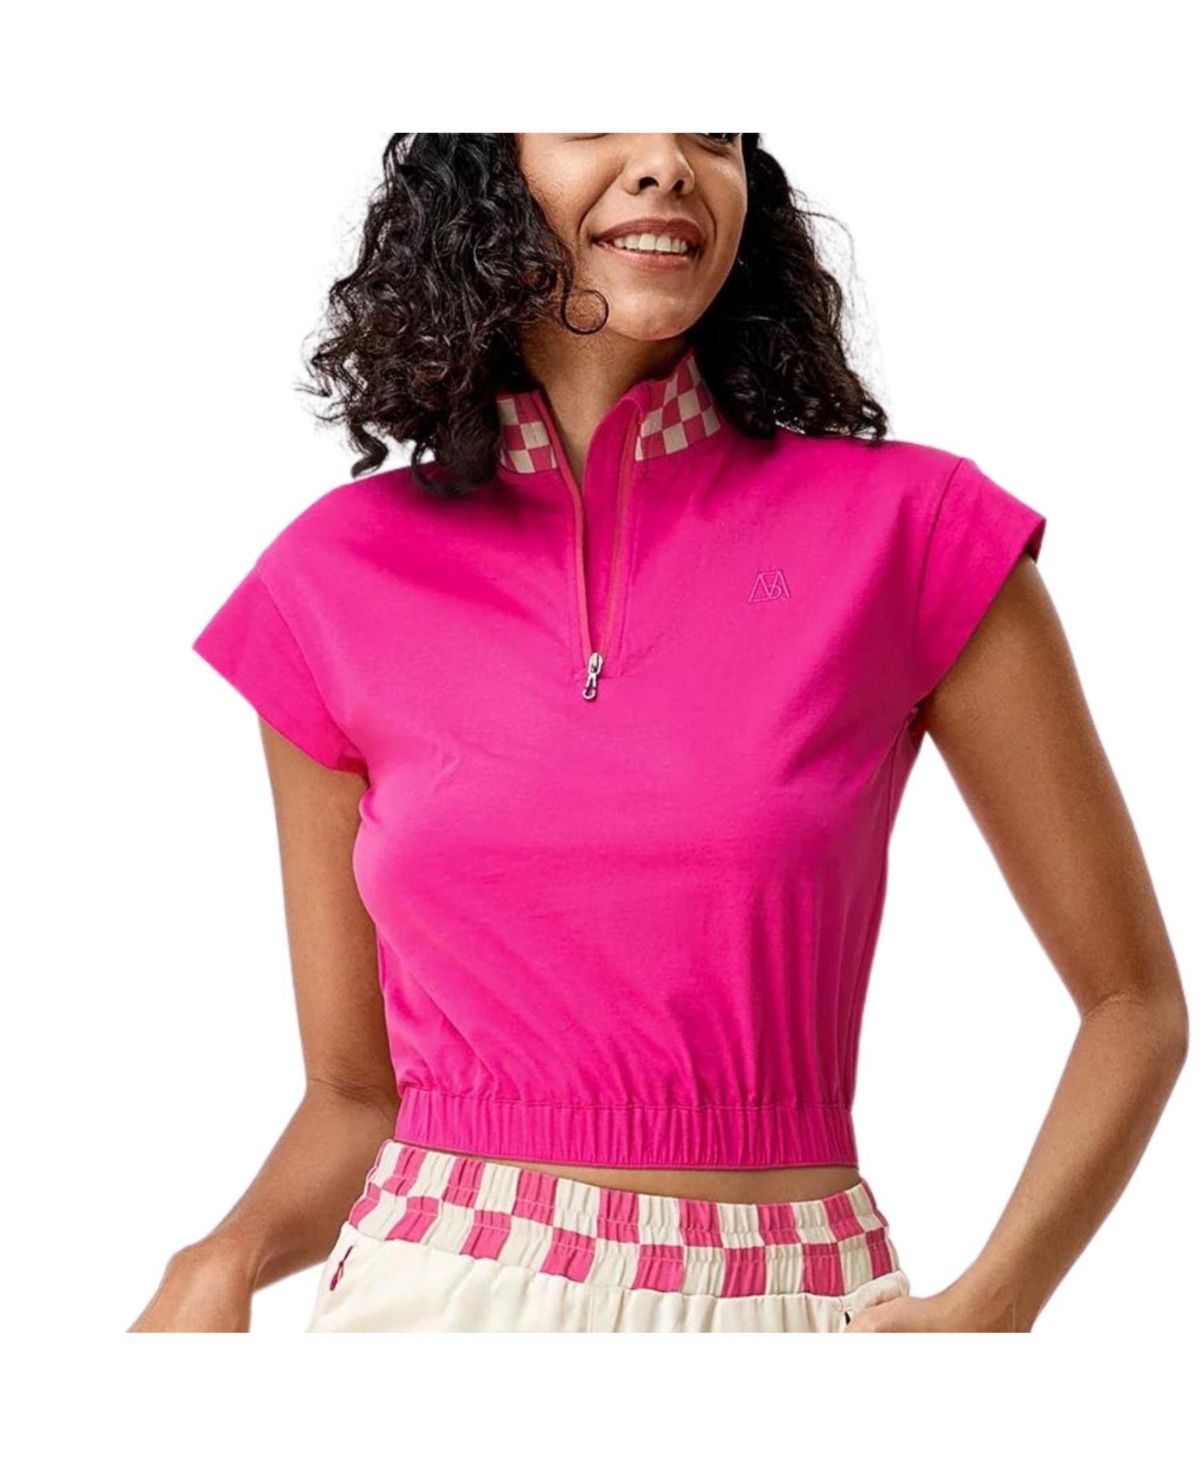 Belle mere Women's Checkered Chic Half-Zip Crop Top - Pink